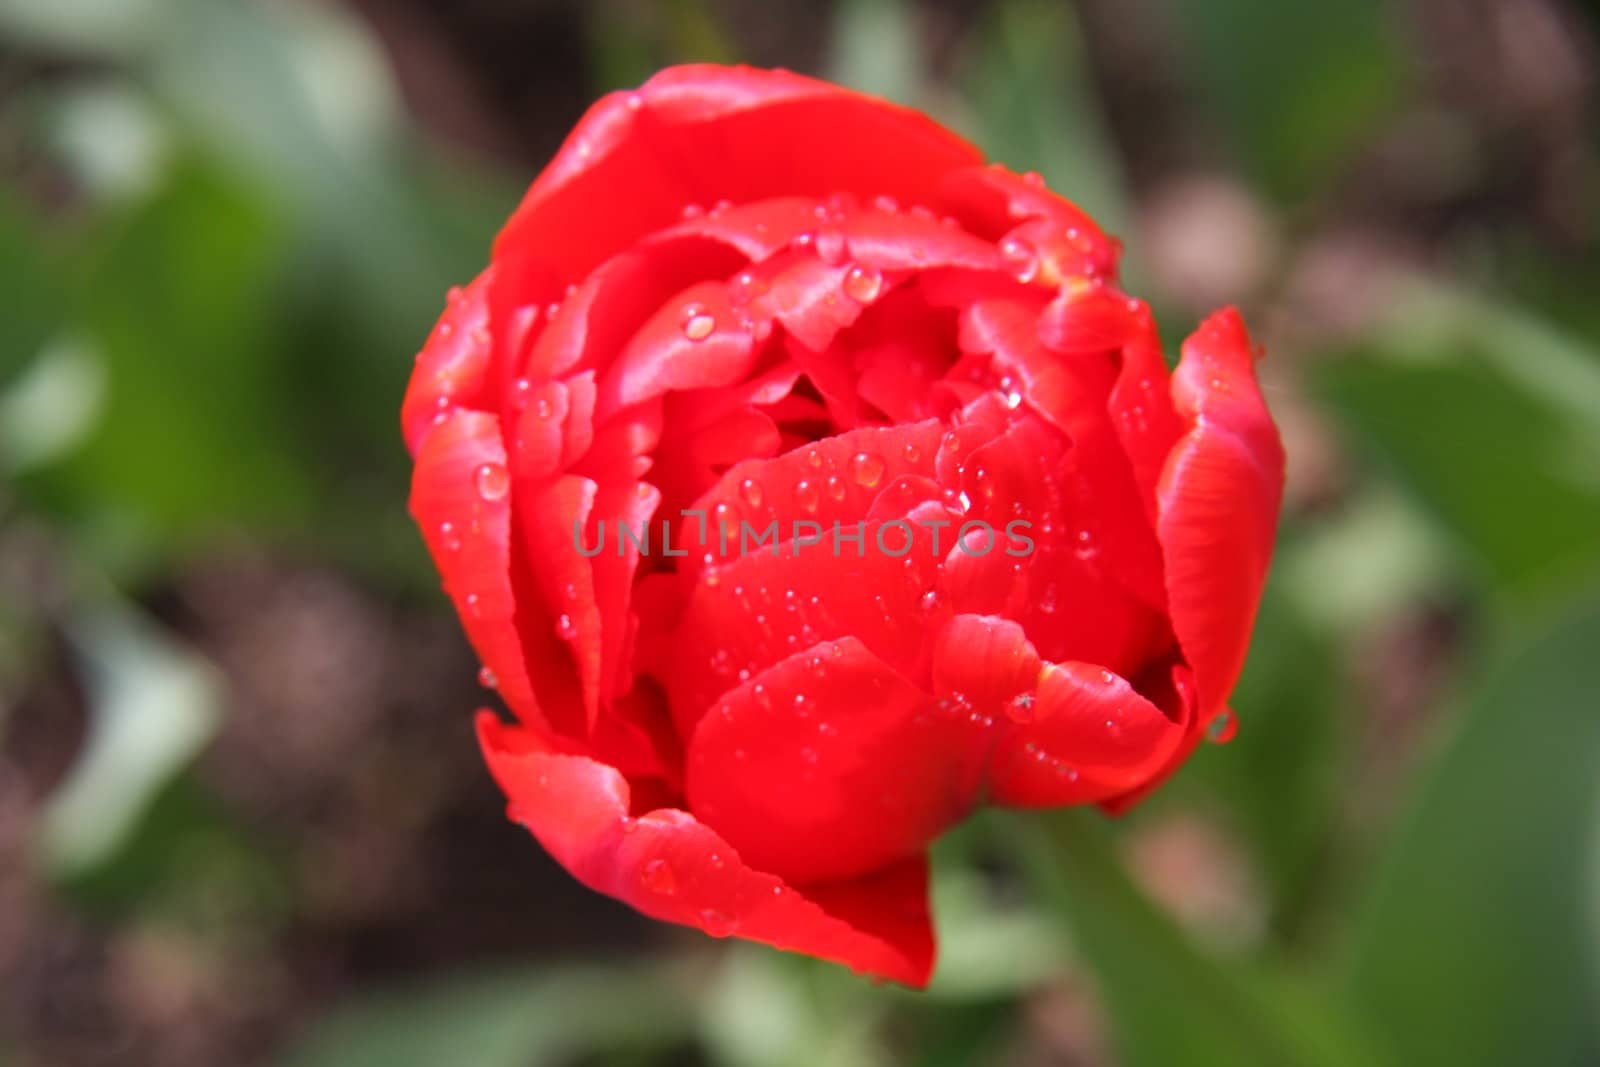 Red tulip in the garden